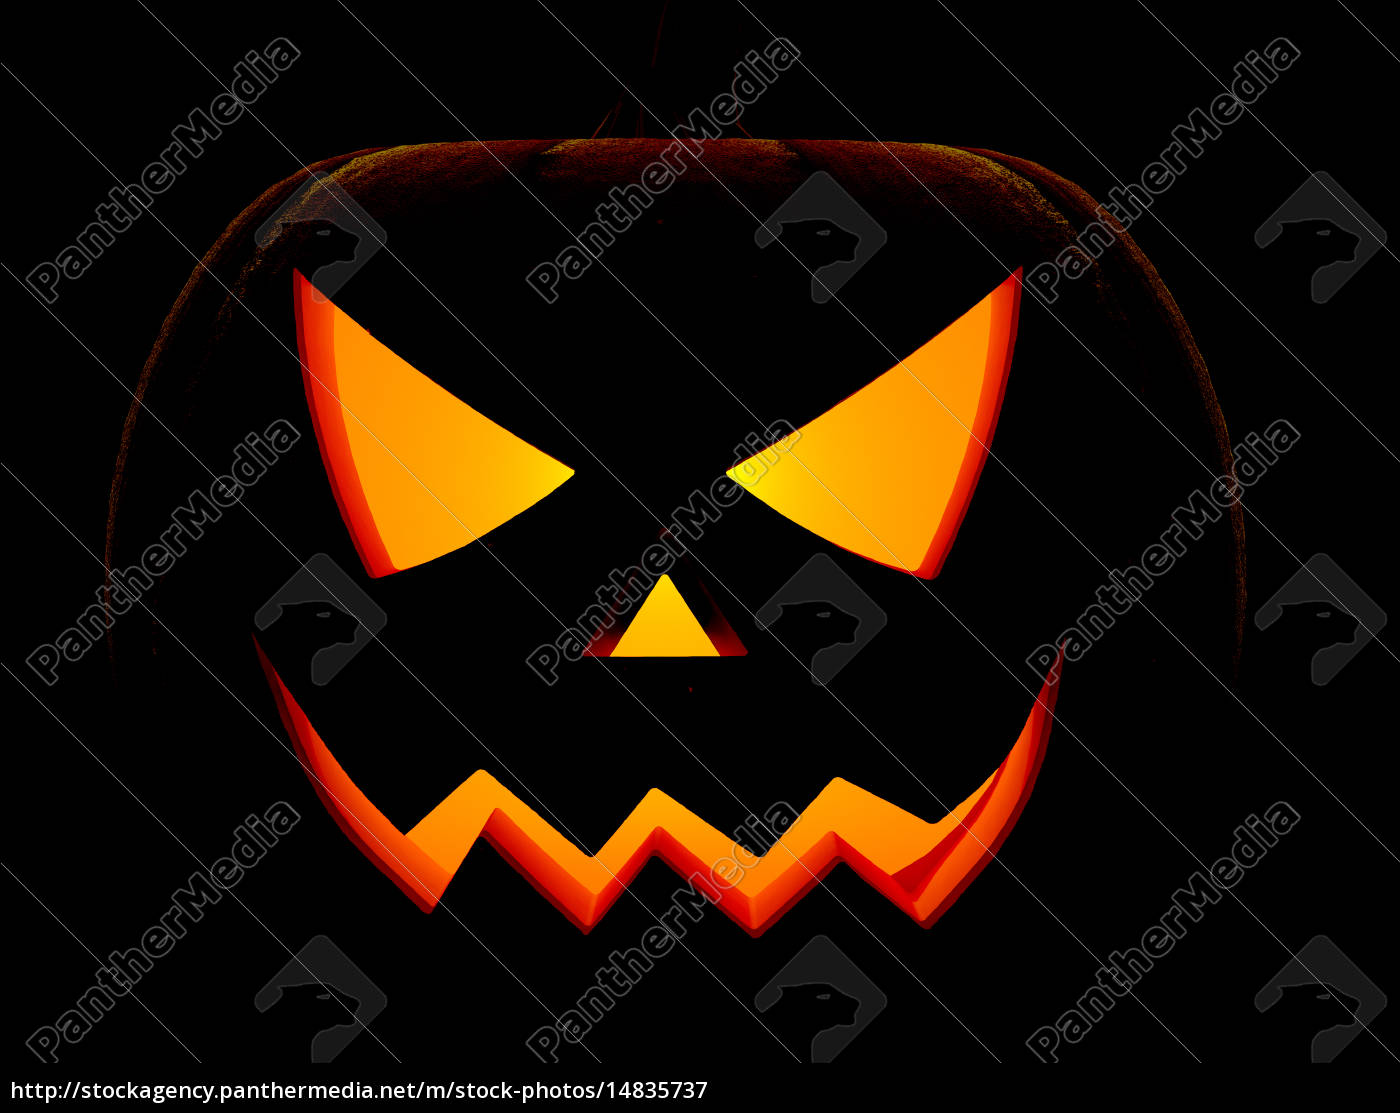 Abóbora de Halloween com cara assustadora - Fotos de arquivo